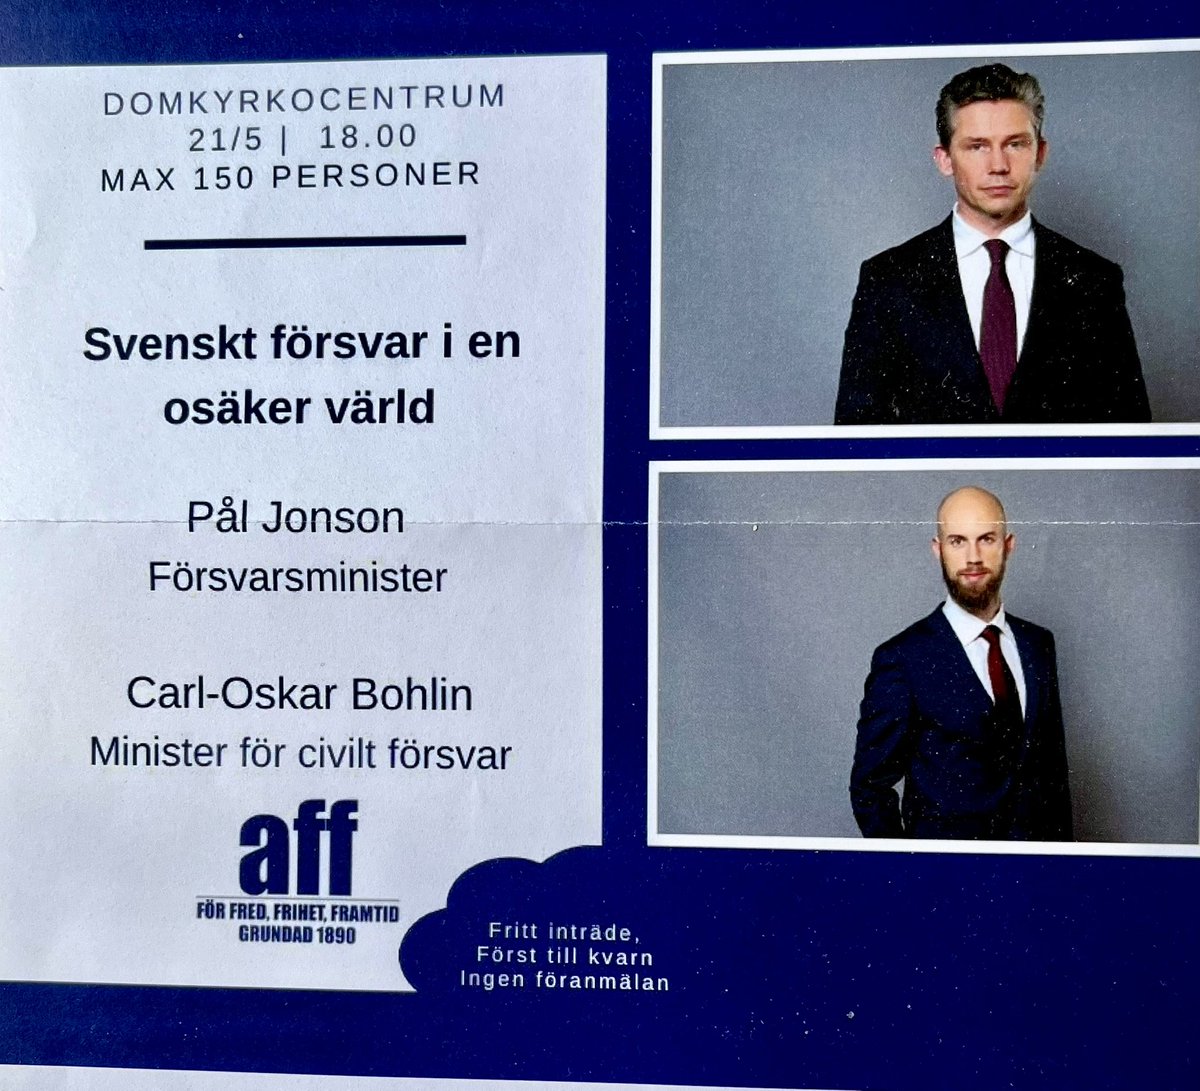 Vi är stolta att ha två ministrar som talare med AFF @AFF_sweden i #Växjö imorgon. Bli medlem du också och ta del av intressanta föredrag och tidningen Vårt Försvar! AFF är del av det svenska civilsamhället sedan 1890. Välkomna @PlJonson och @CarlOskar! #föpol #säkpol #svfm